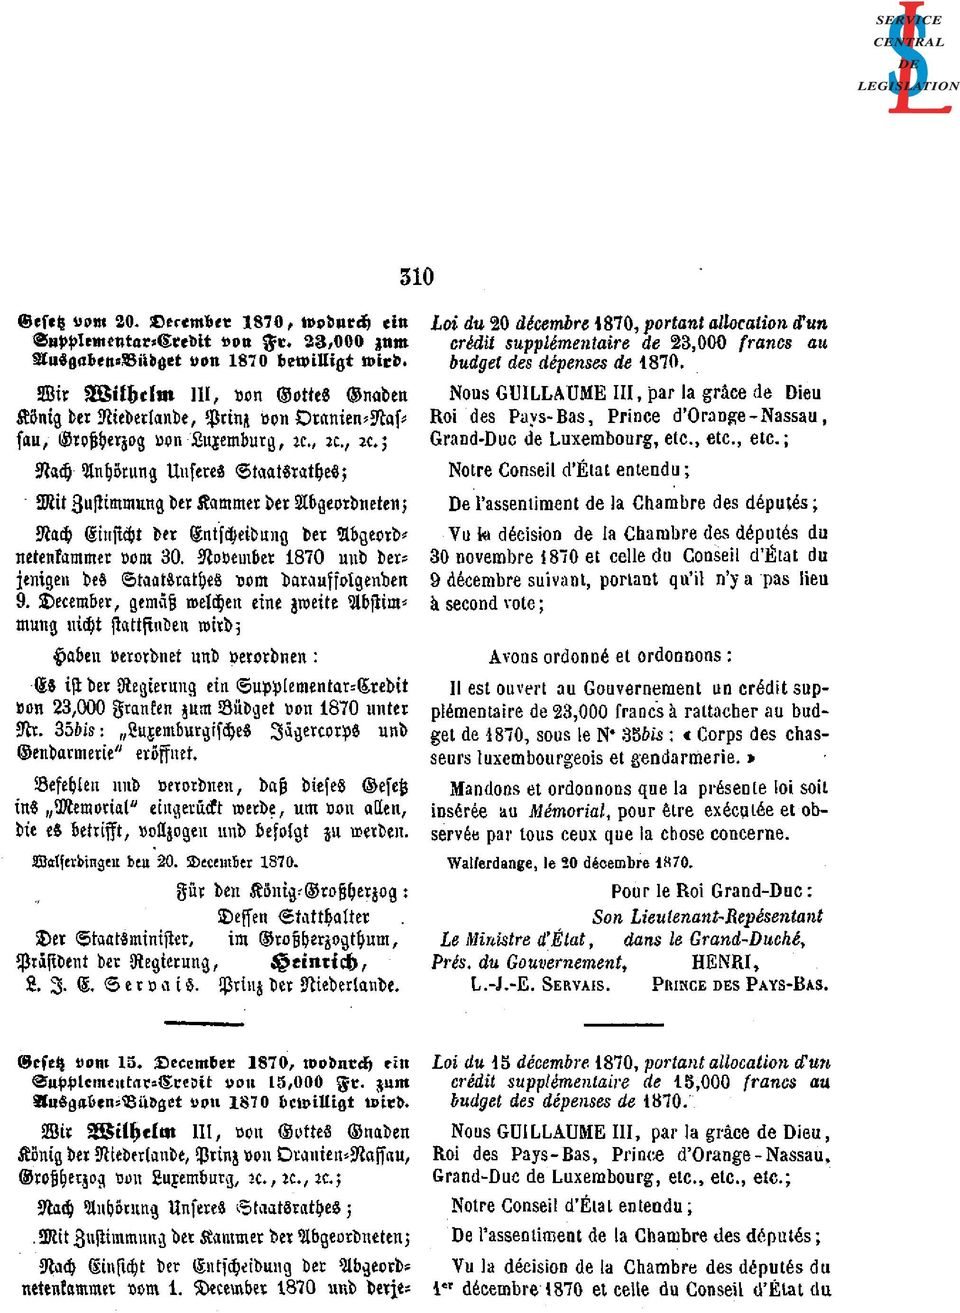 Decemder, gemäß welchen eine zweite Abstimmung Es ist der Regierung ein Supplementar-Credit von 23,000 Franken zum Büdget von 1870 unter Nr.